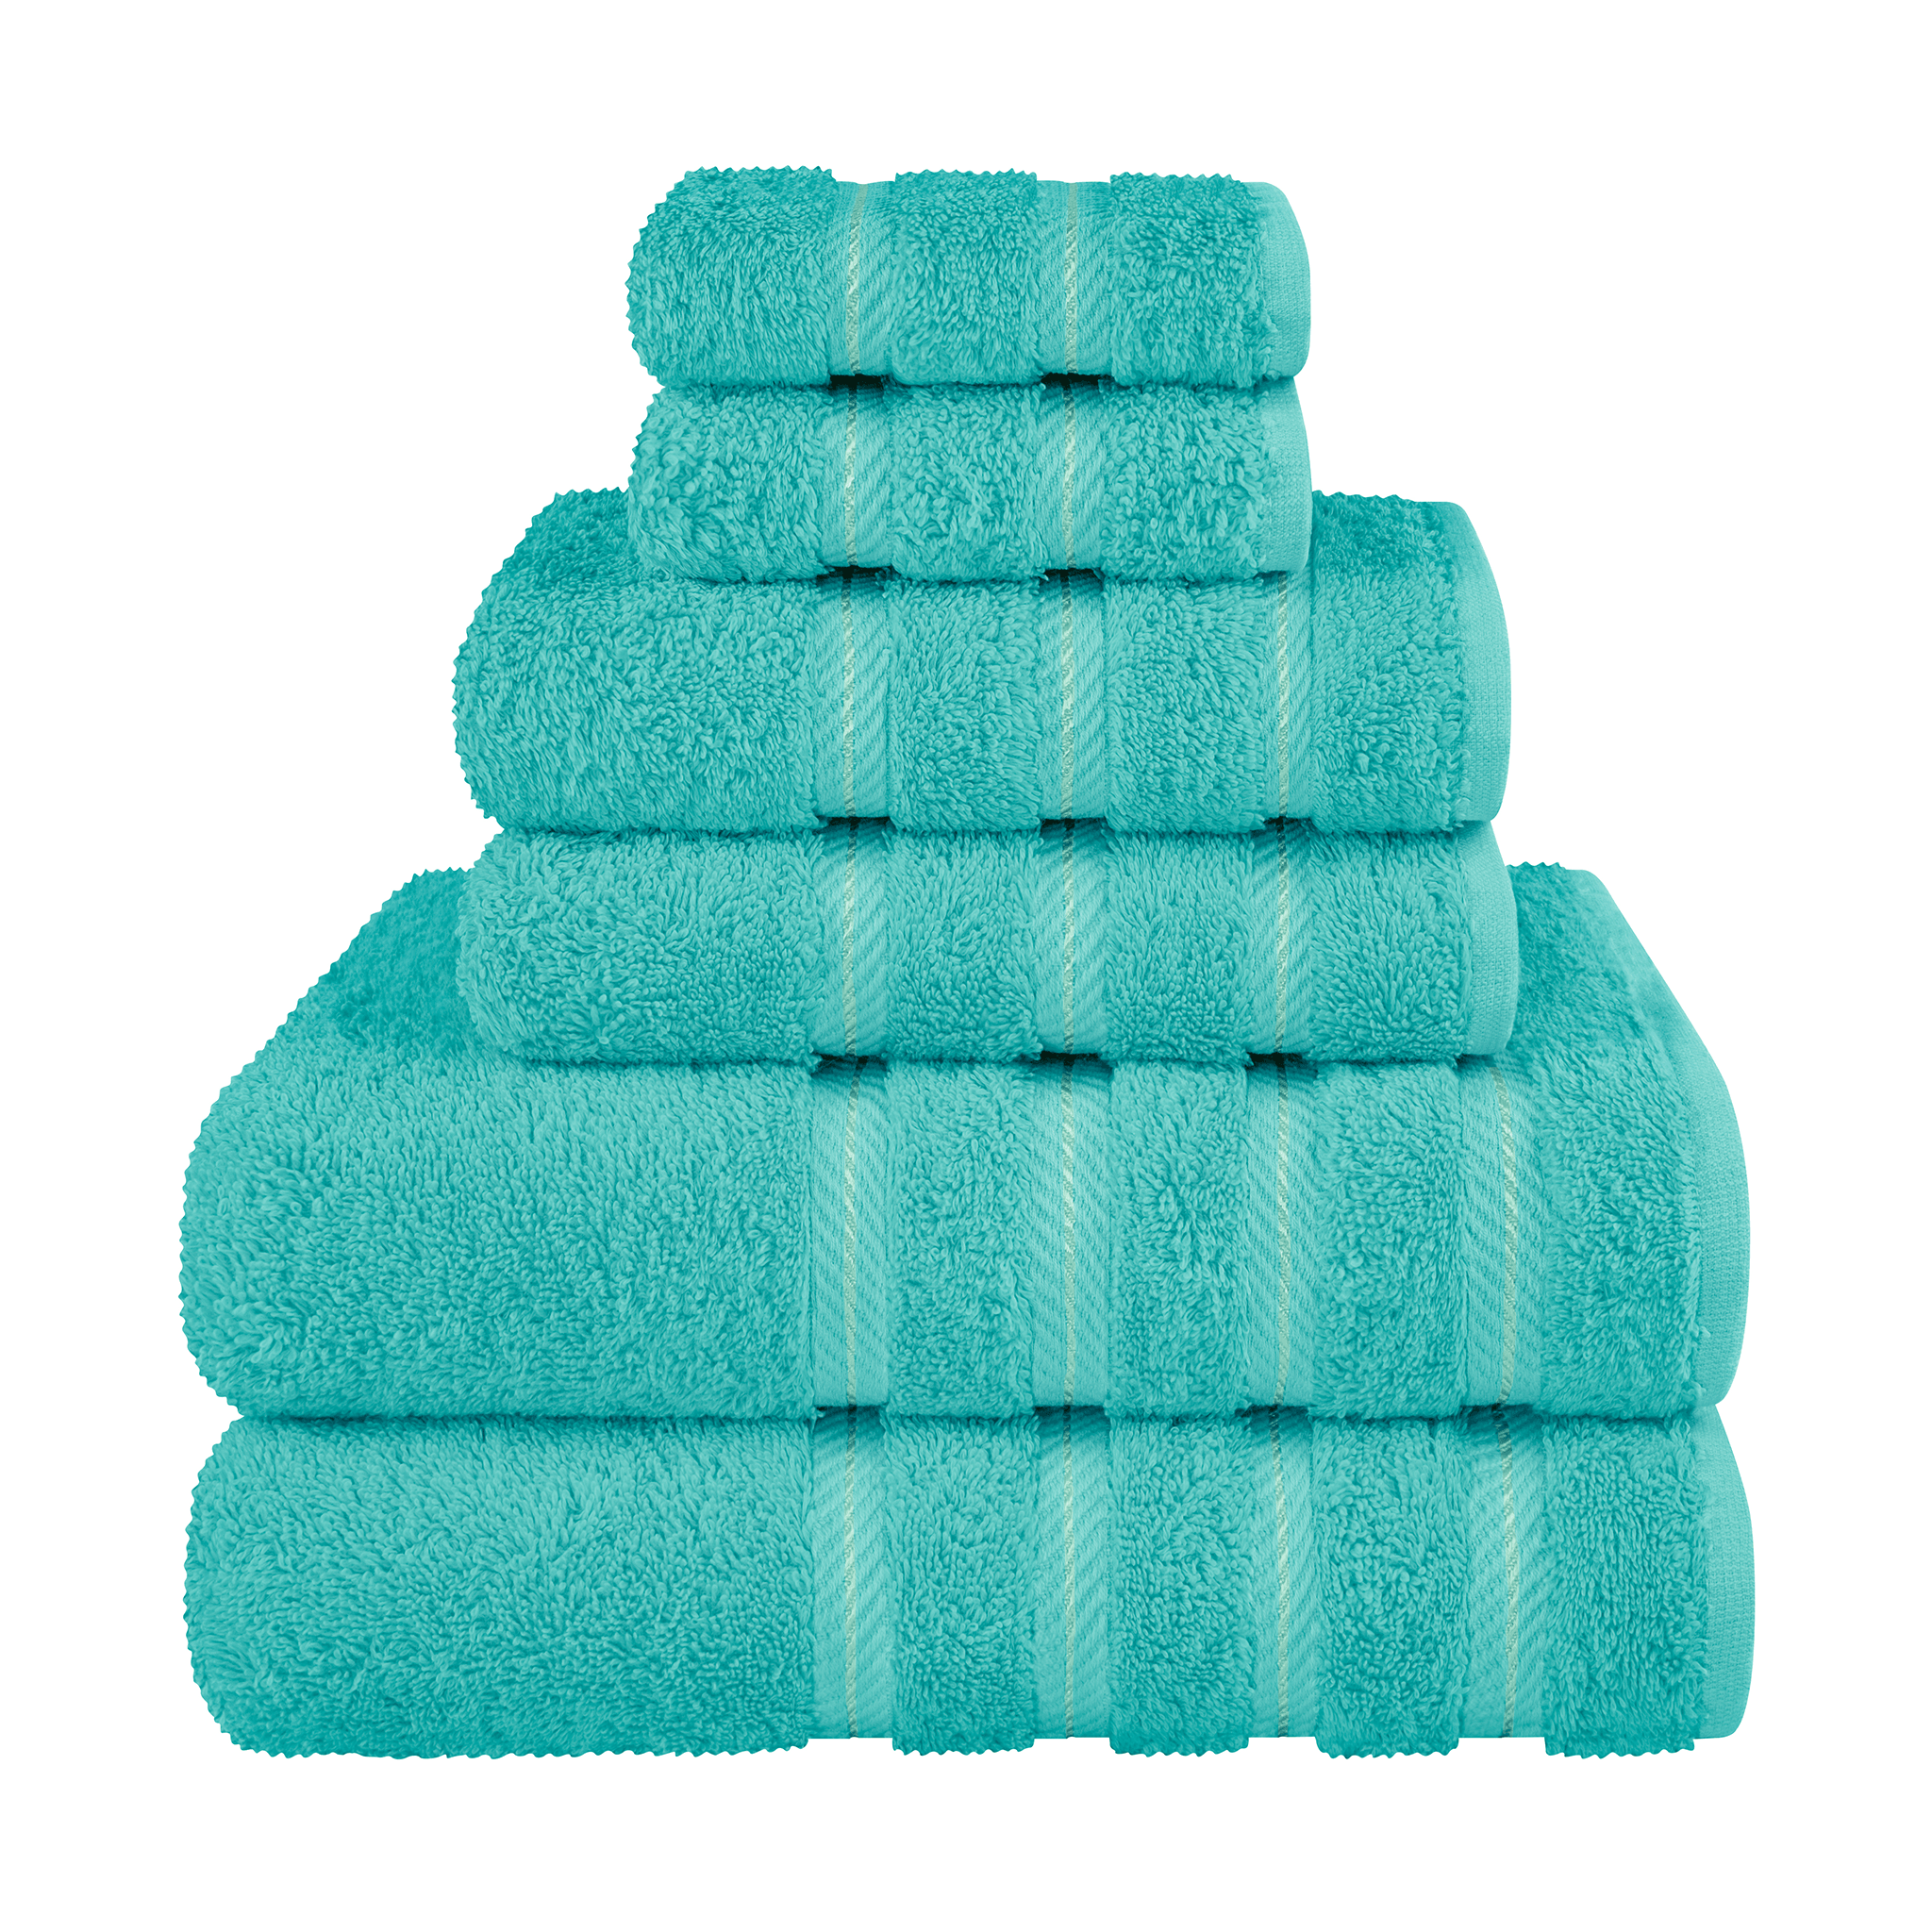 American Soft Linen - 6 Piece Turkish Cotton Bath Towel Set - Turquoise-Blue - 1